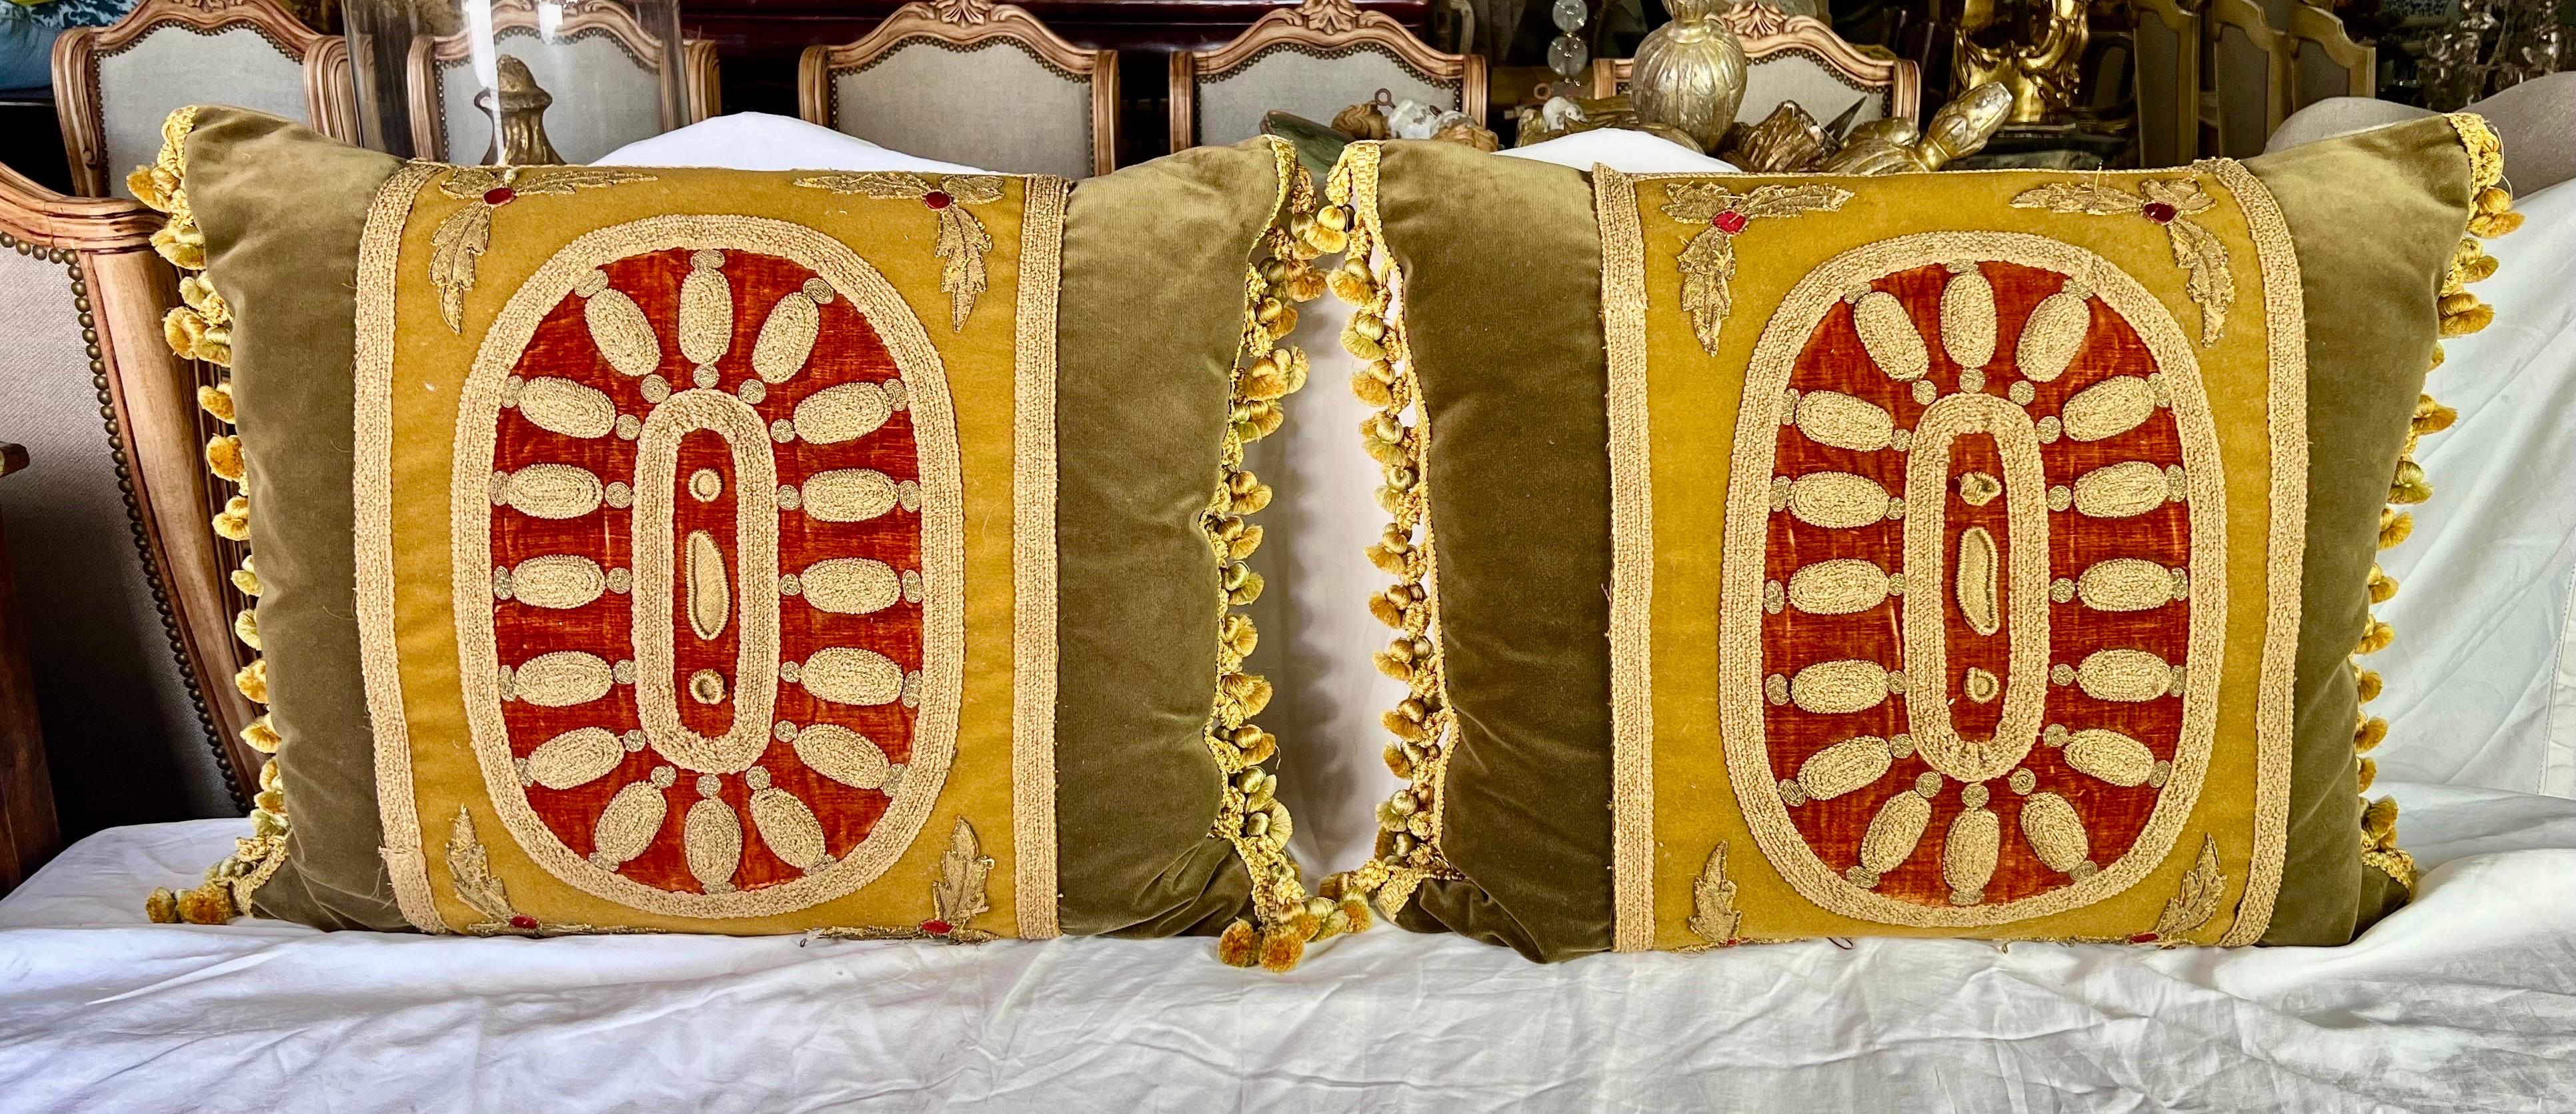 Cette paire de coussins avec broderie métallique du XIXe siècle sur velours doré, sur fond orange brûlé, apporte une touche d'opulence.  Le design/One, le velours vert et les franges multicolores ajoutent à leur richesse.  Les inserts garnis de